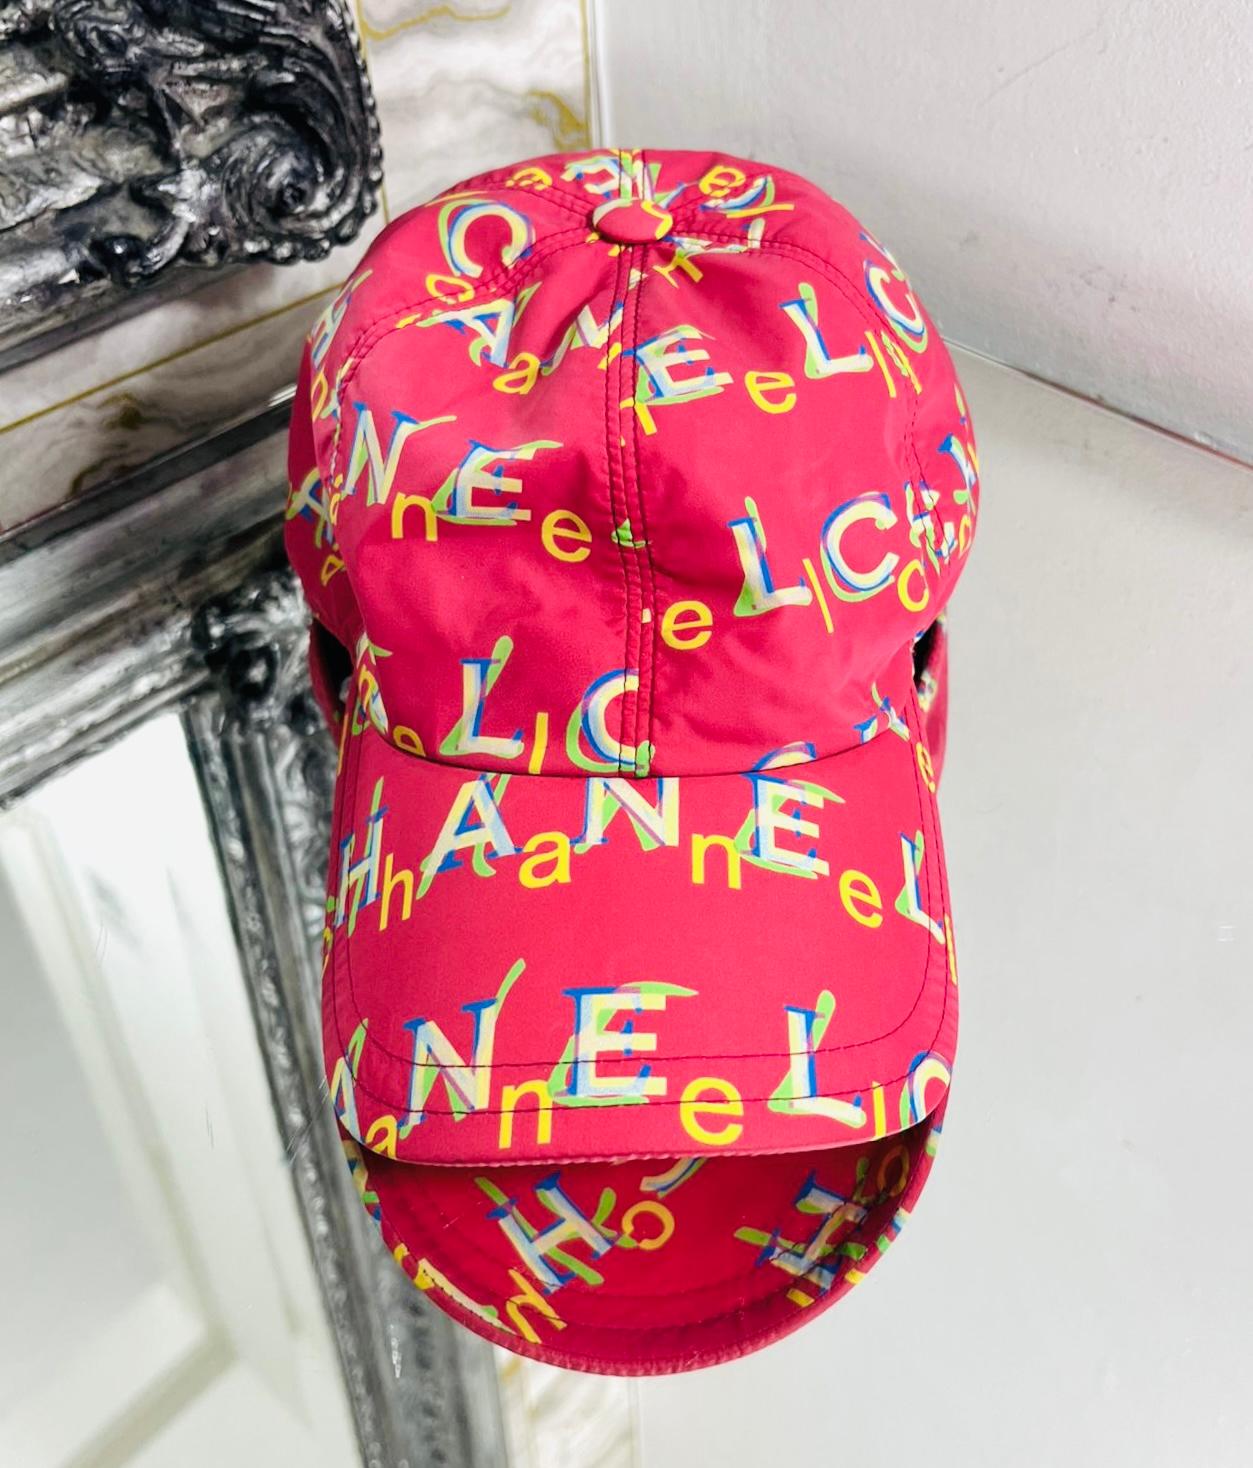 Chanel Logo Nylon Kappe

Fuchsia/rote Cap mit mehrfarbigen, sich überlappenden Chanel